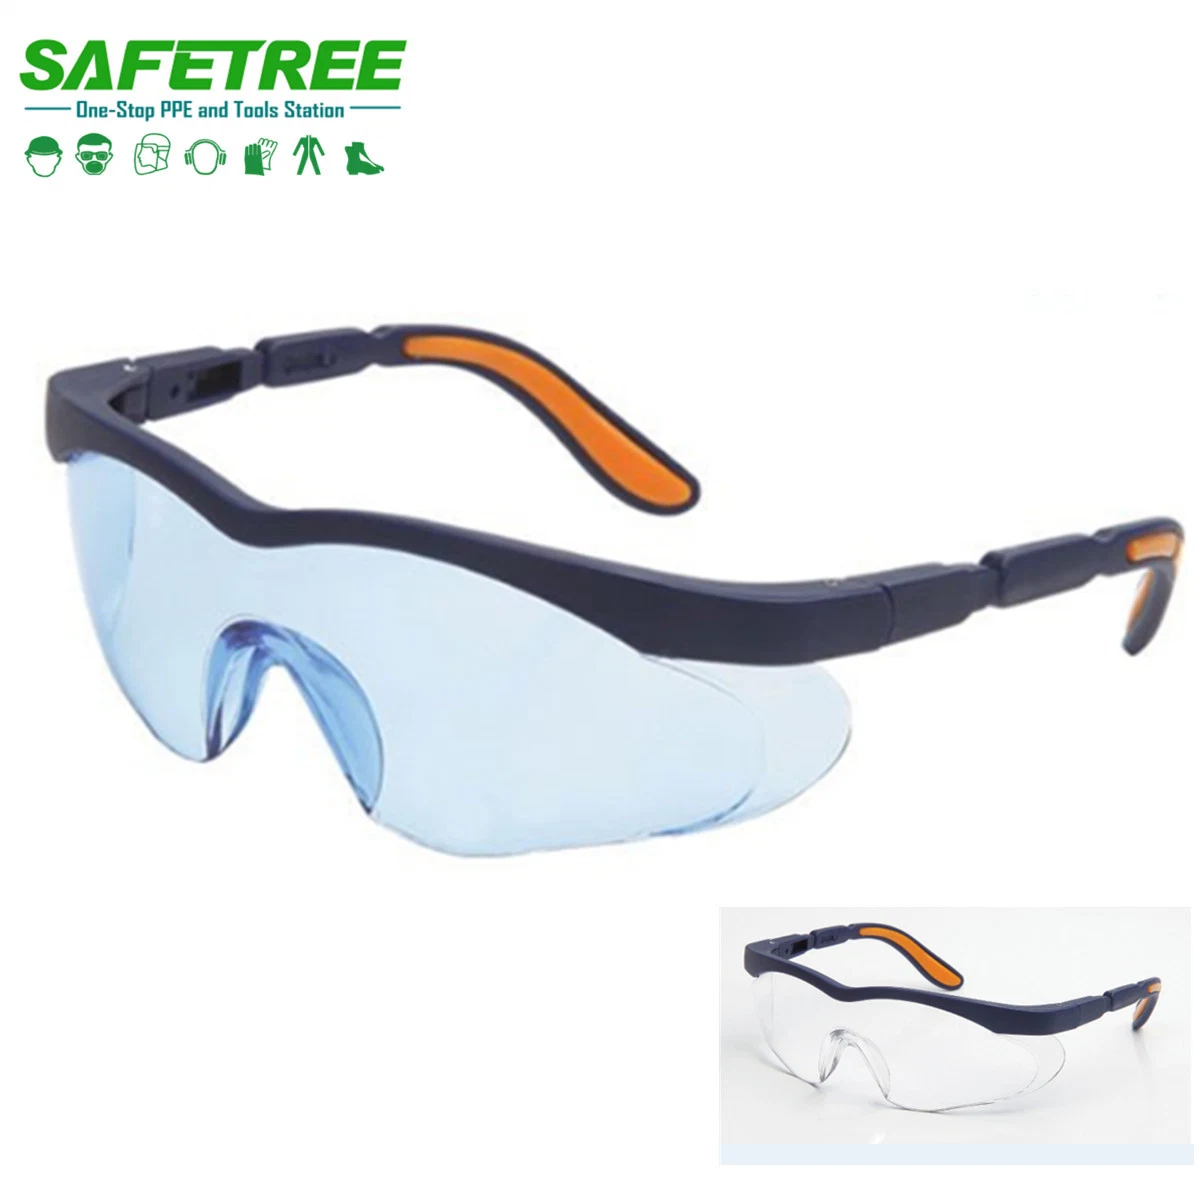 Safetree ANSI Z87.1 gafas Gafas de seguridad de protección contra arañazos anti niebla Gafas de seguridad